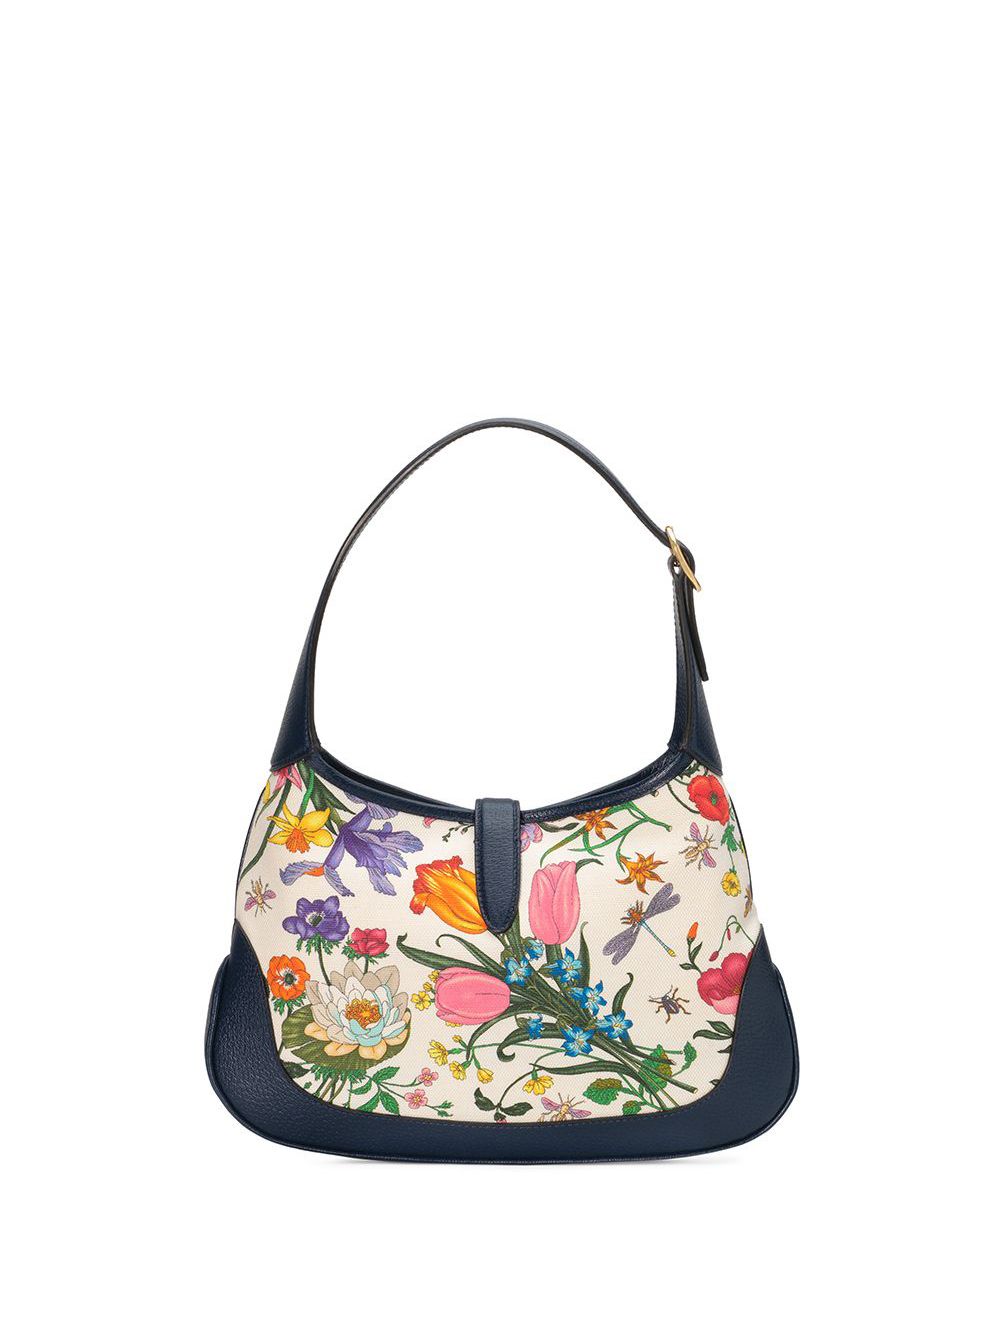 фото Gucci сумка на плечо с цветочным принтом